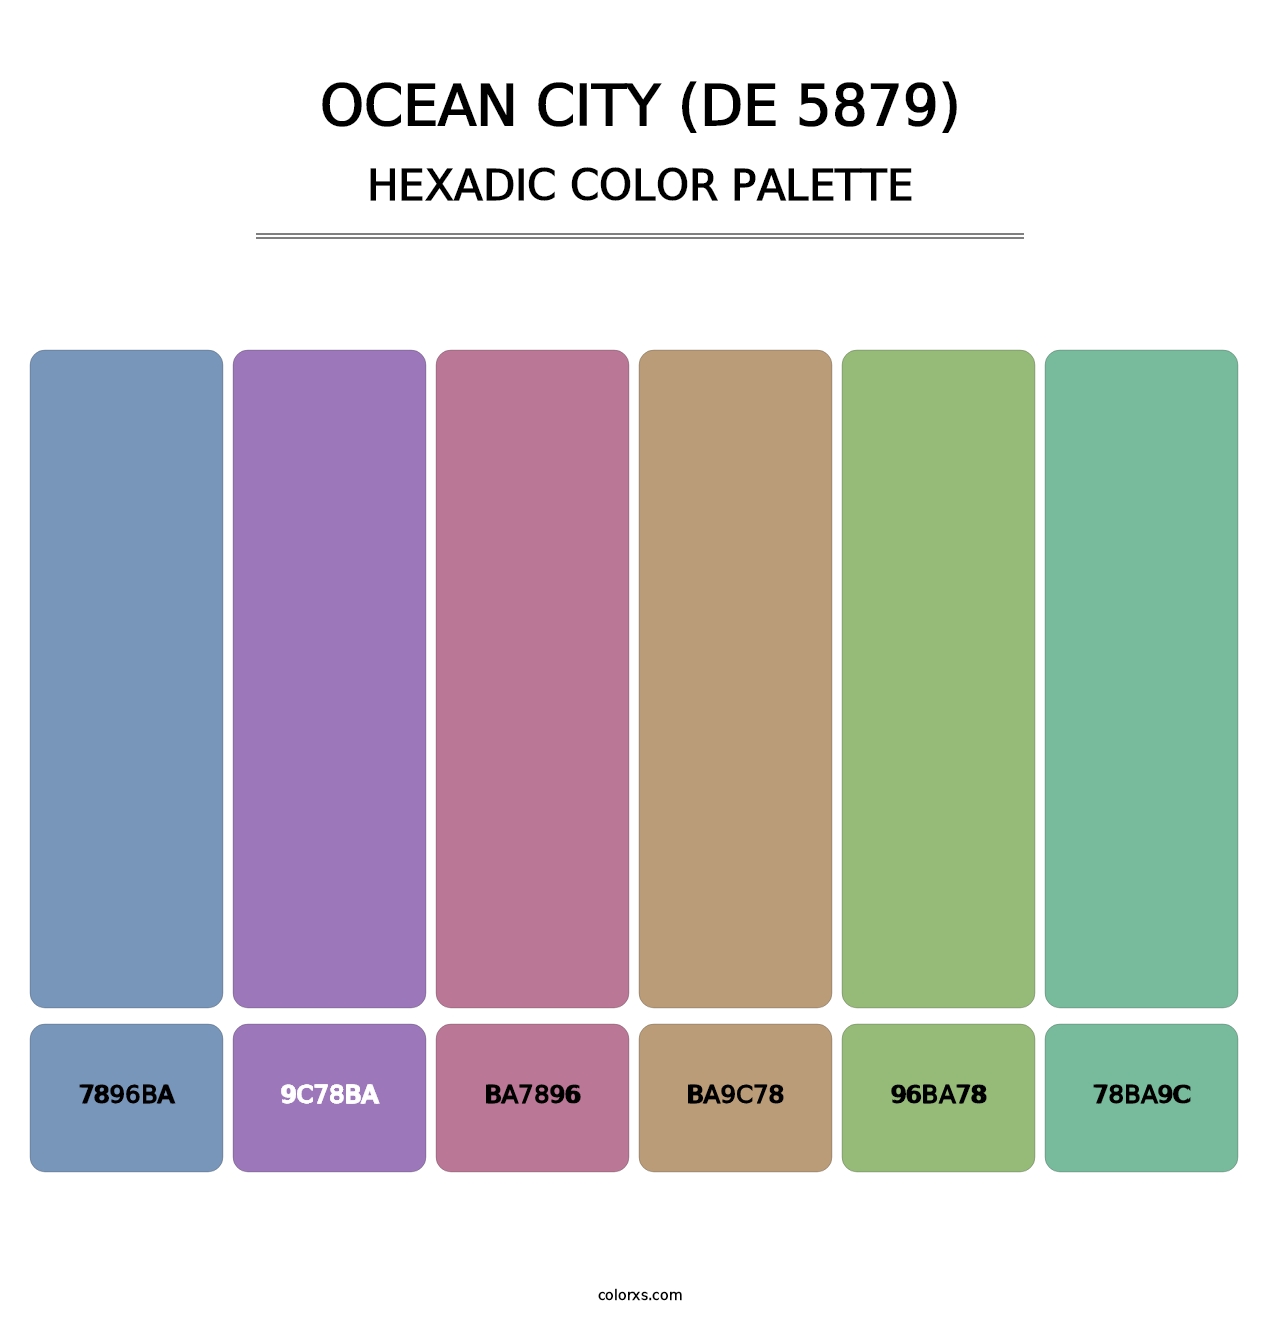 Ocean City (DE 5879) - Hexadic Color Palette